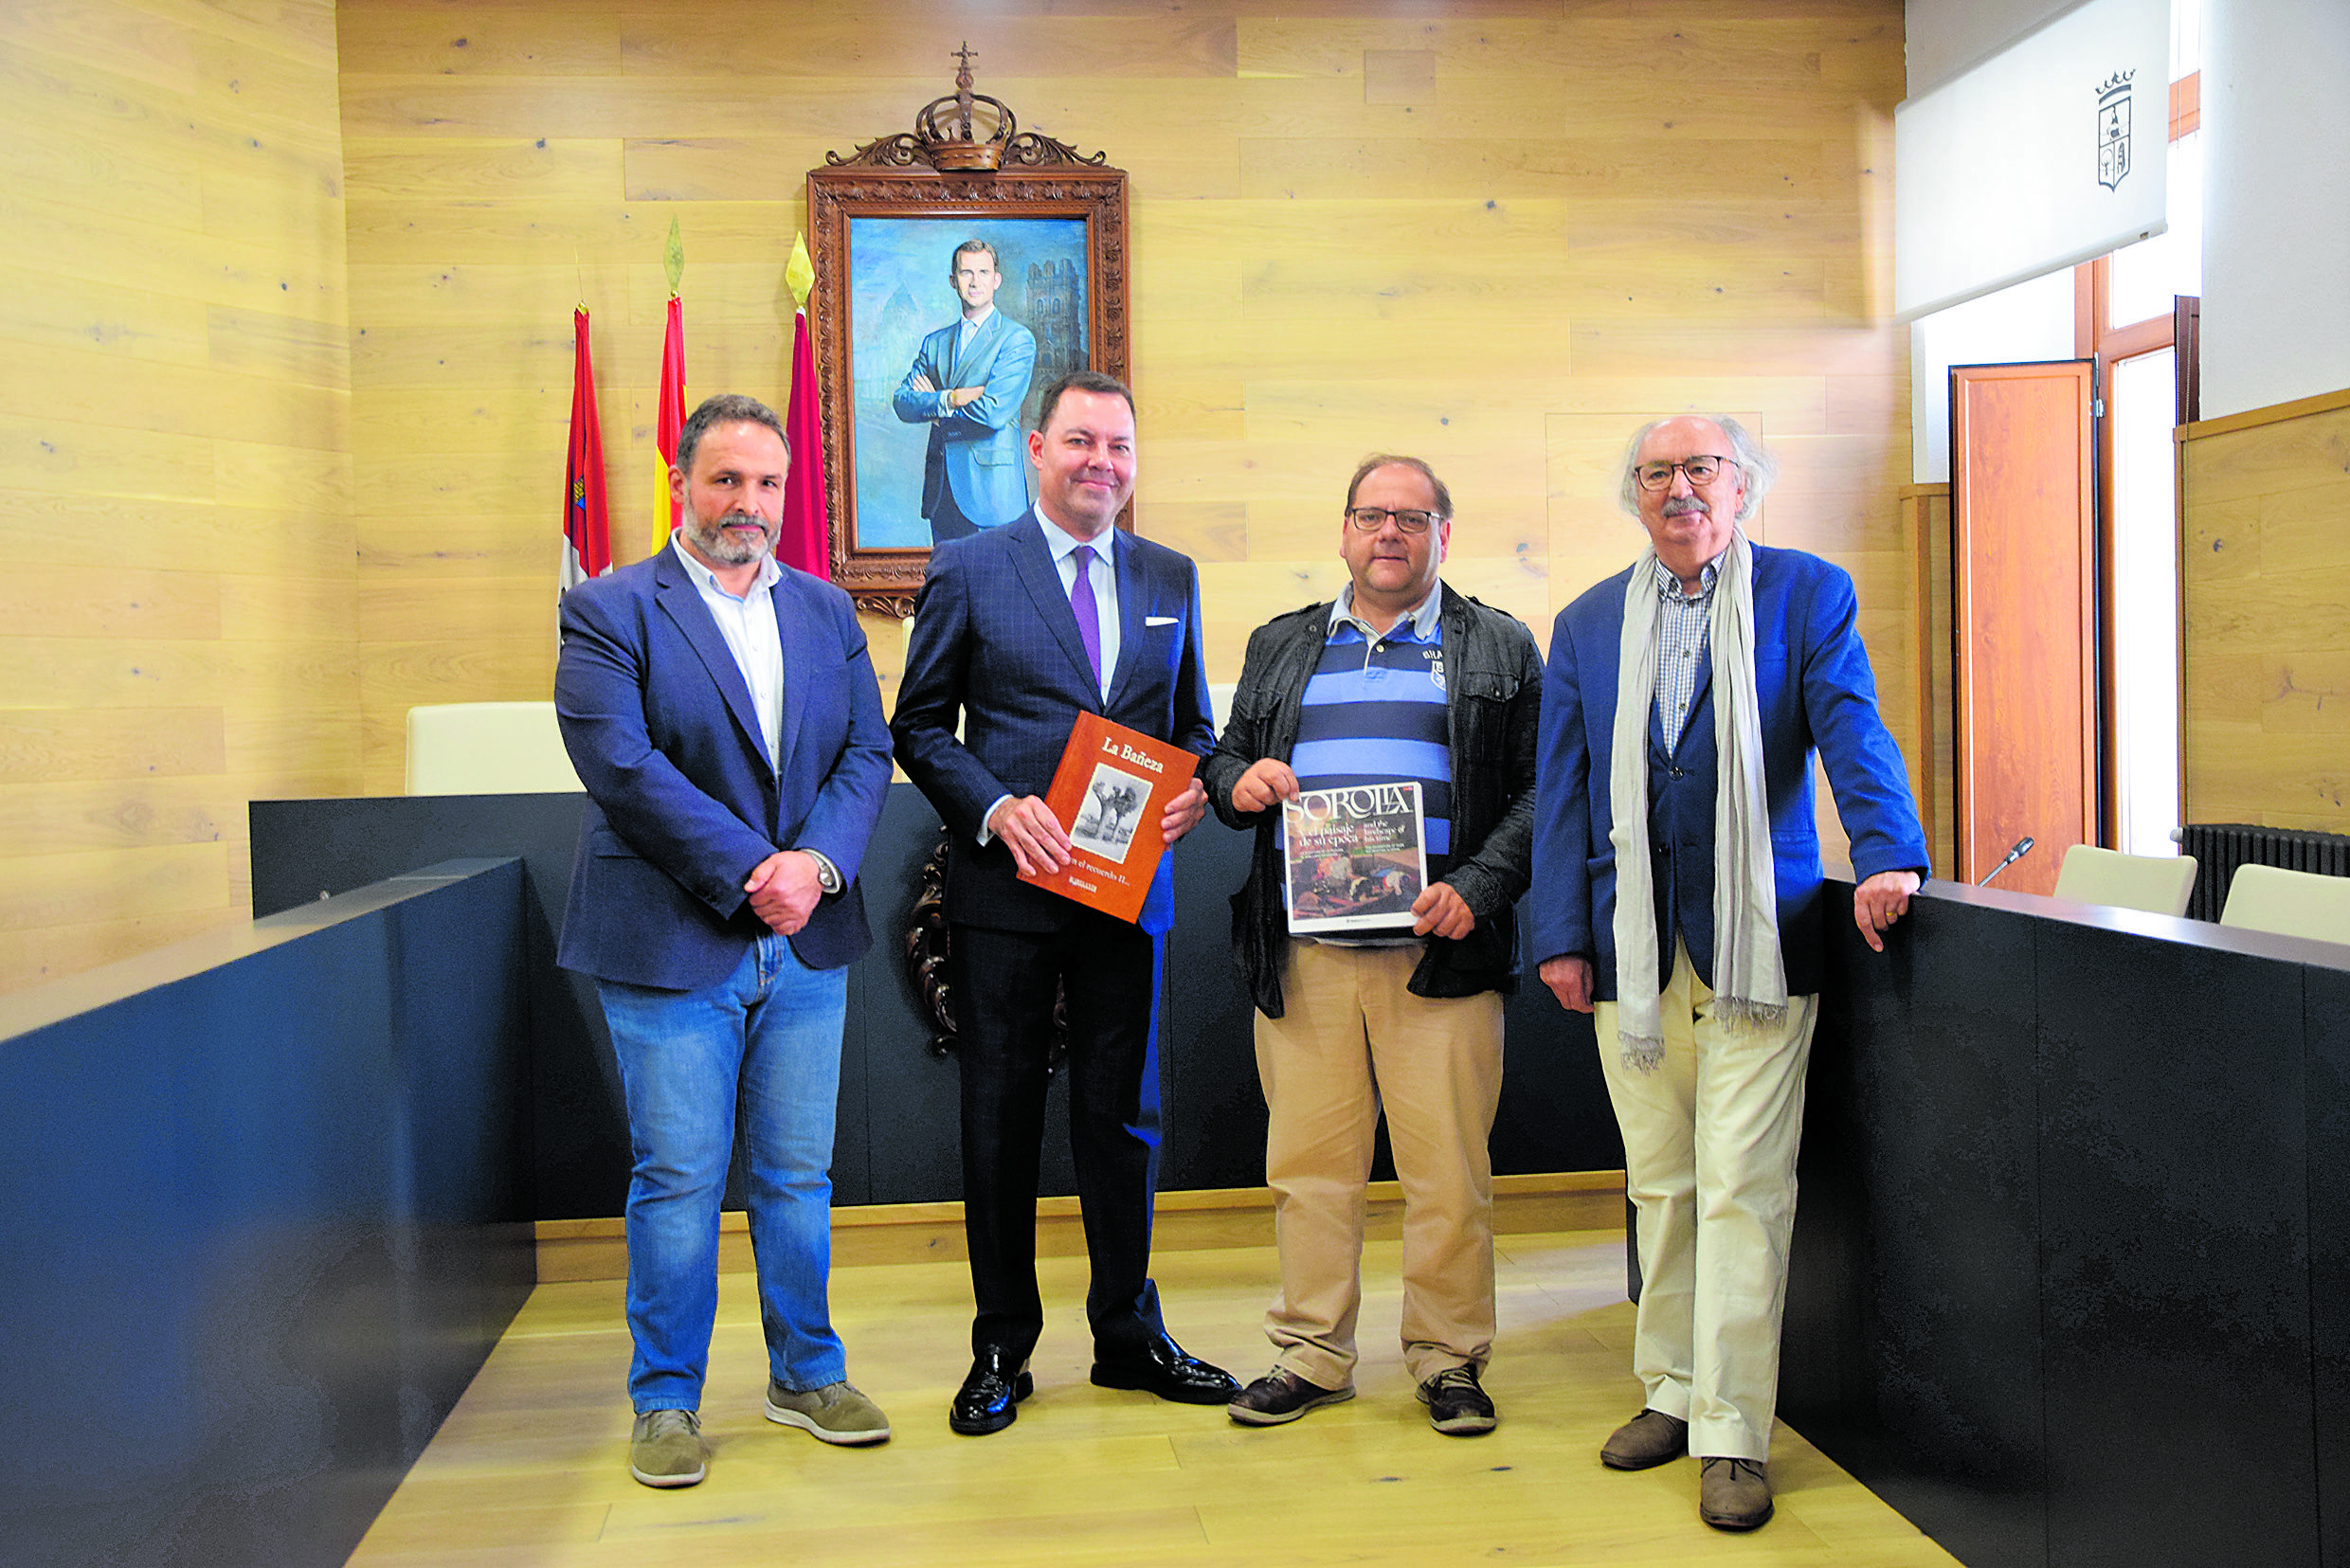 José Luis del Riego, José María Viejo, Javier Carrera y Antonio Colinas en el Ayuntamiento de La Bañeza. | L.N.C.